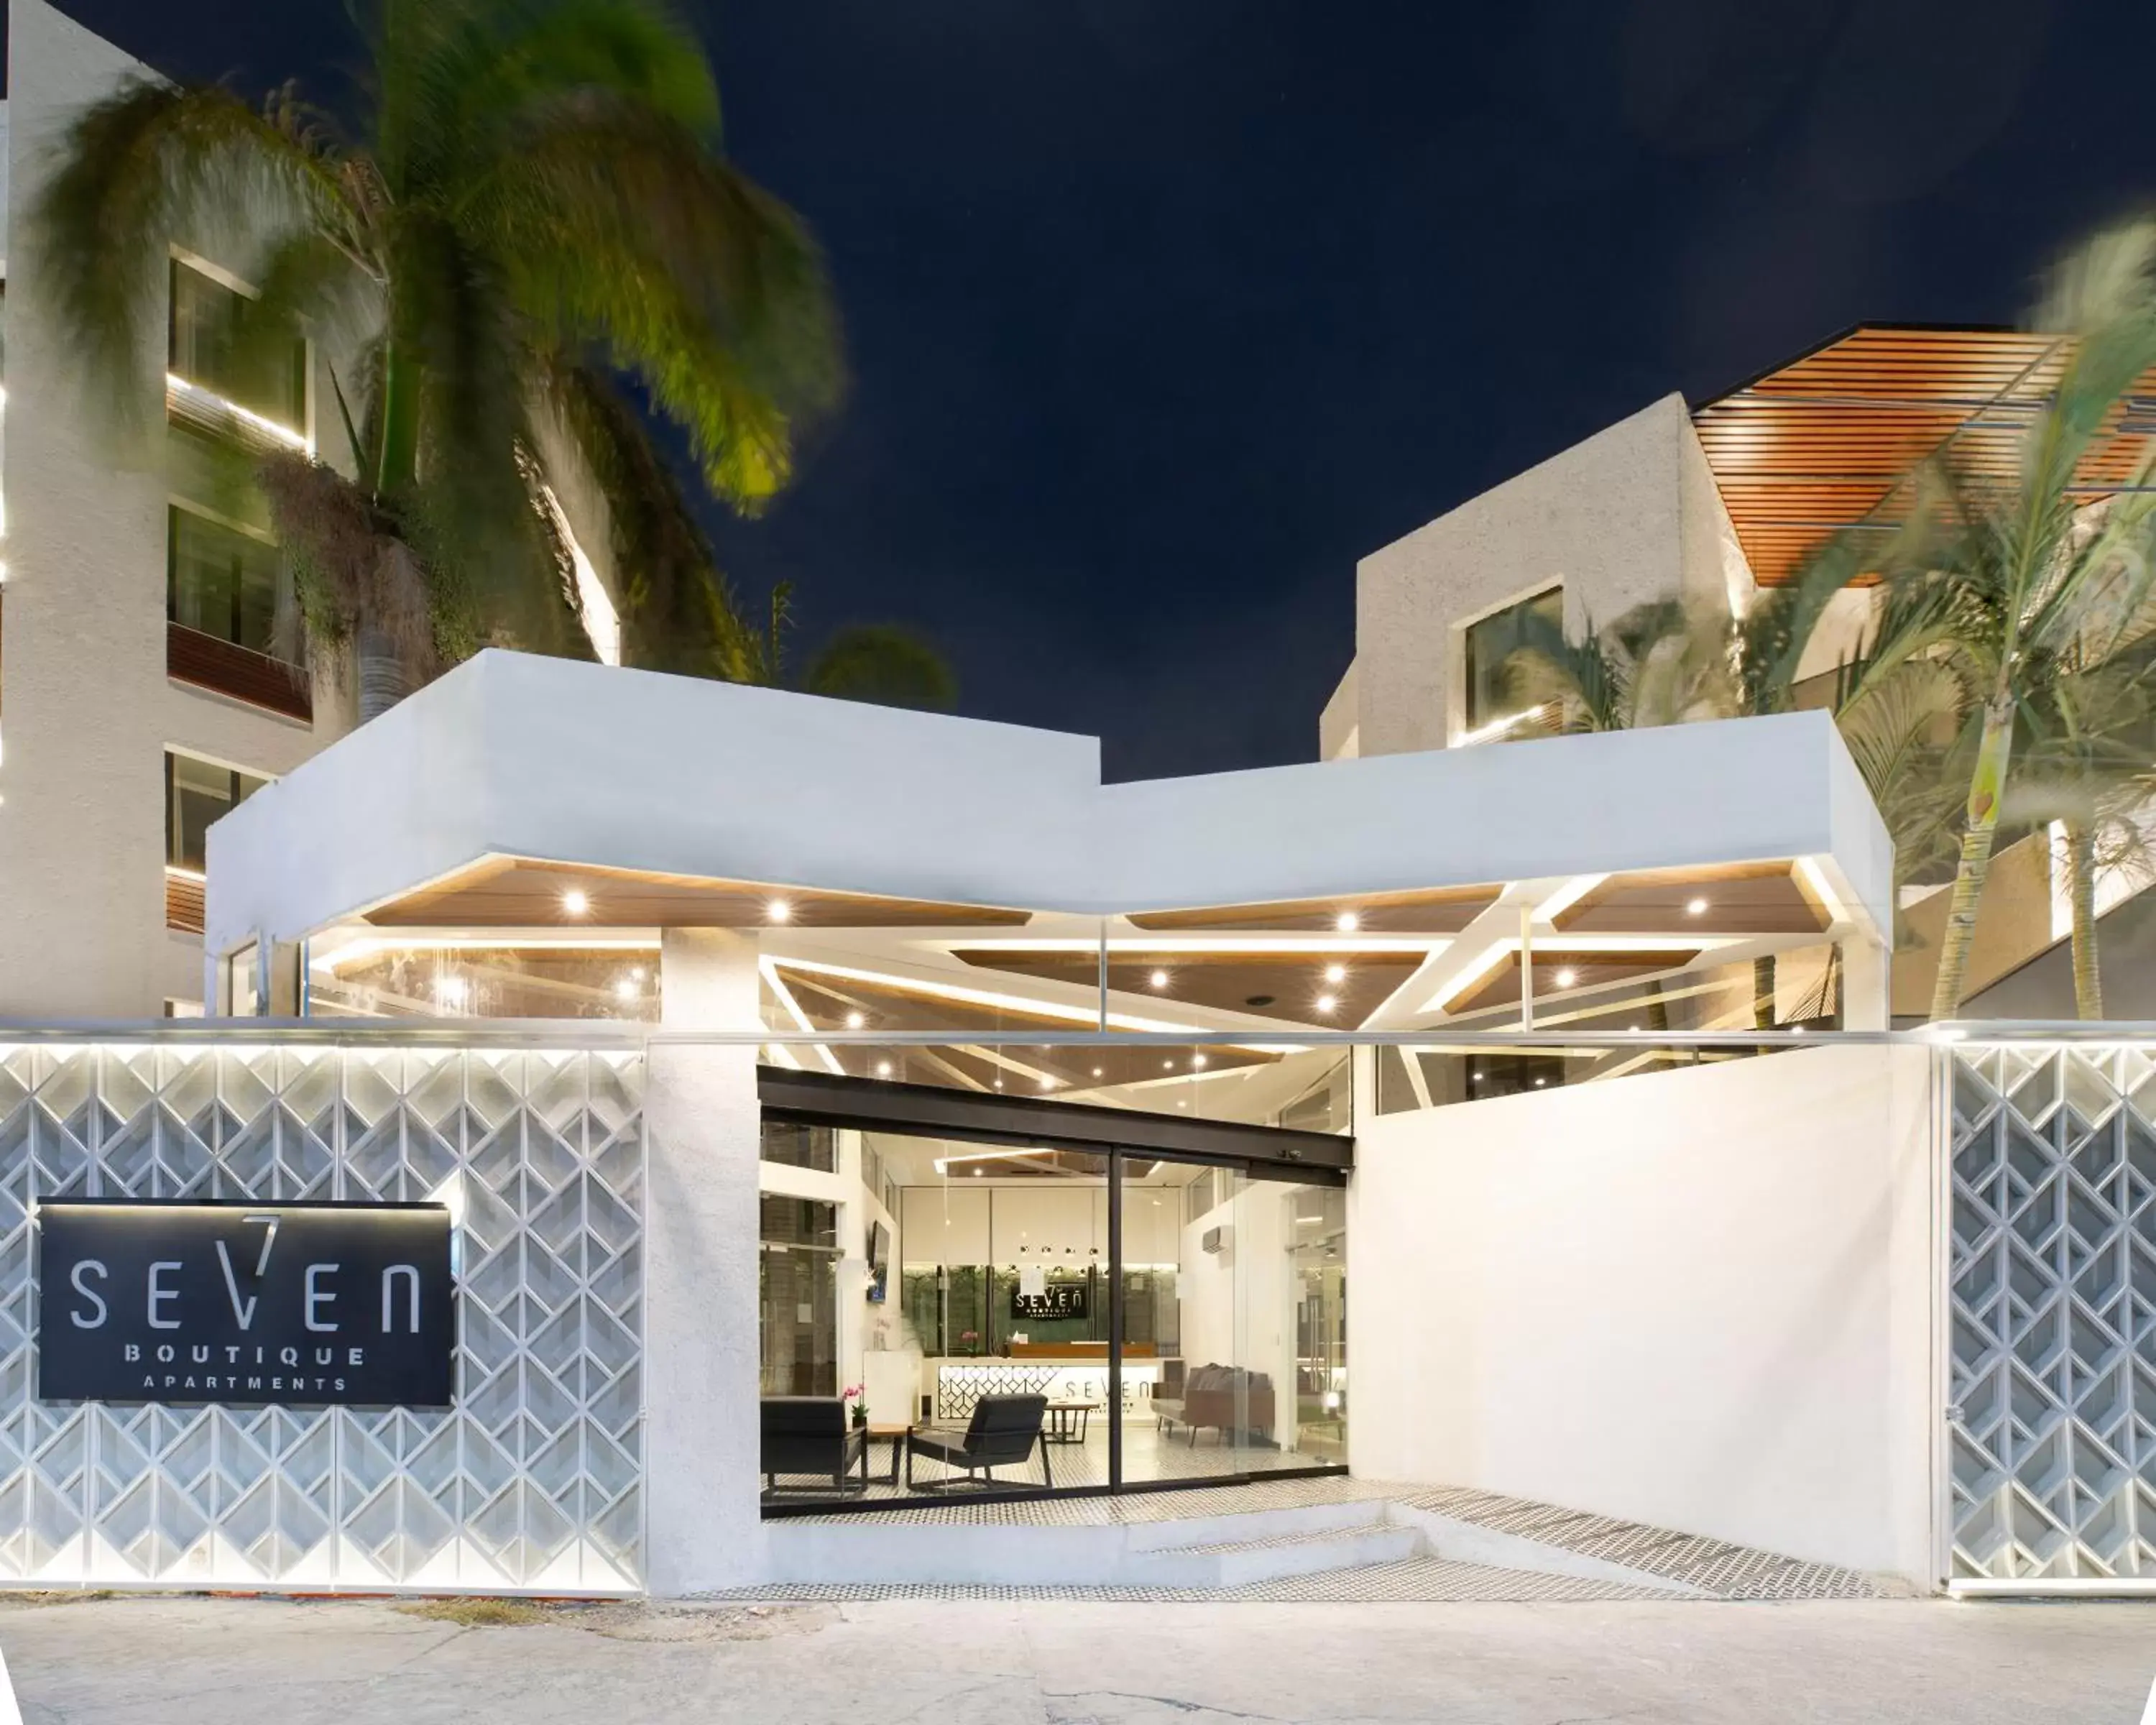 Facade/entrance in Seven Boutique Apartments Cancún